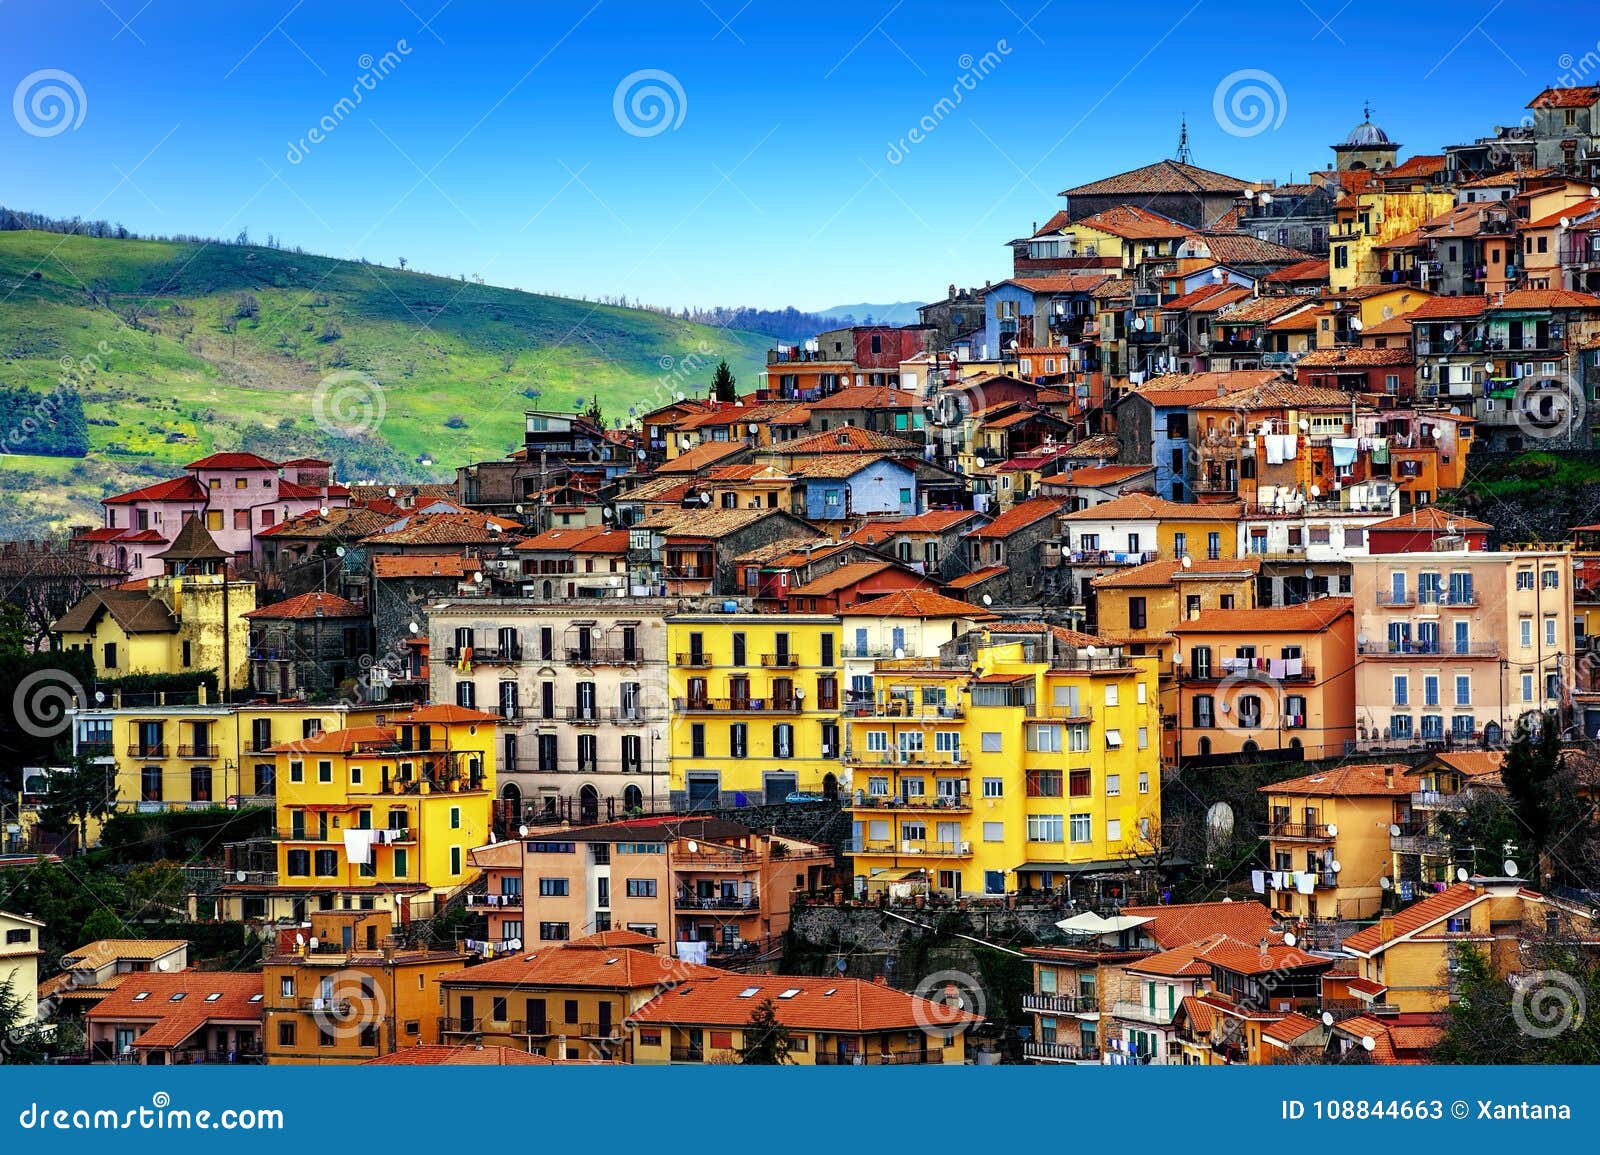 rocca di papa town on alban hills, rome, lazio, italy